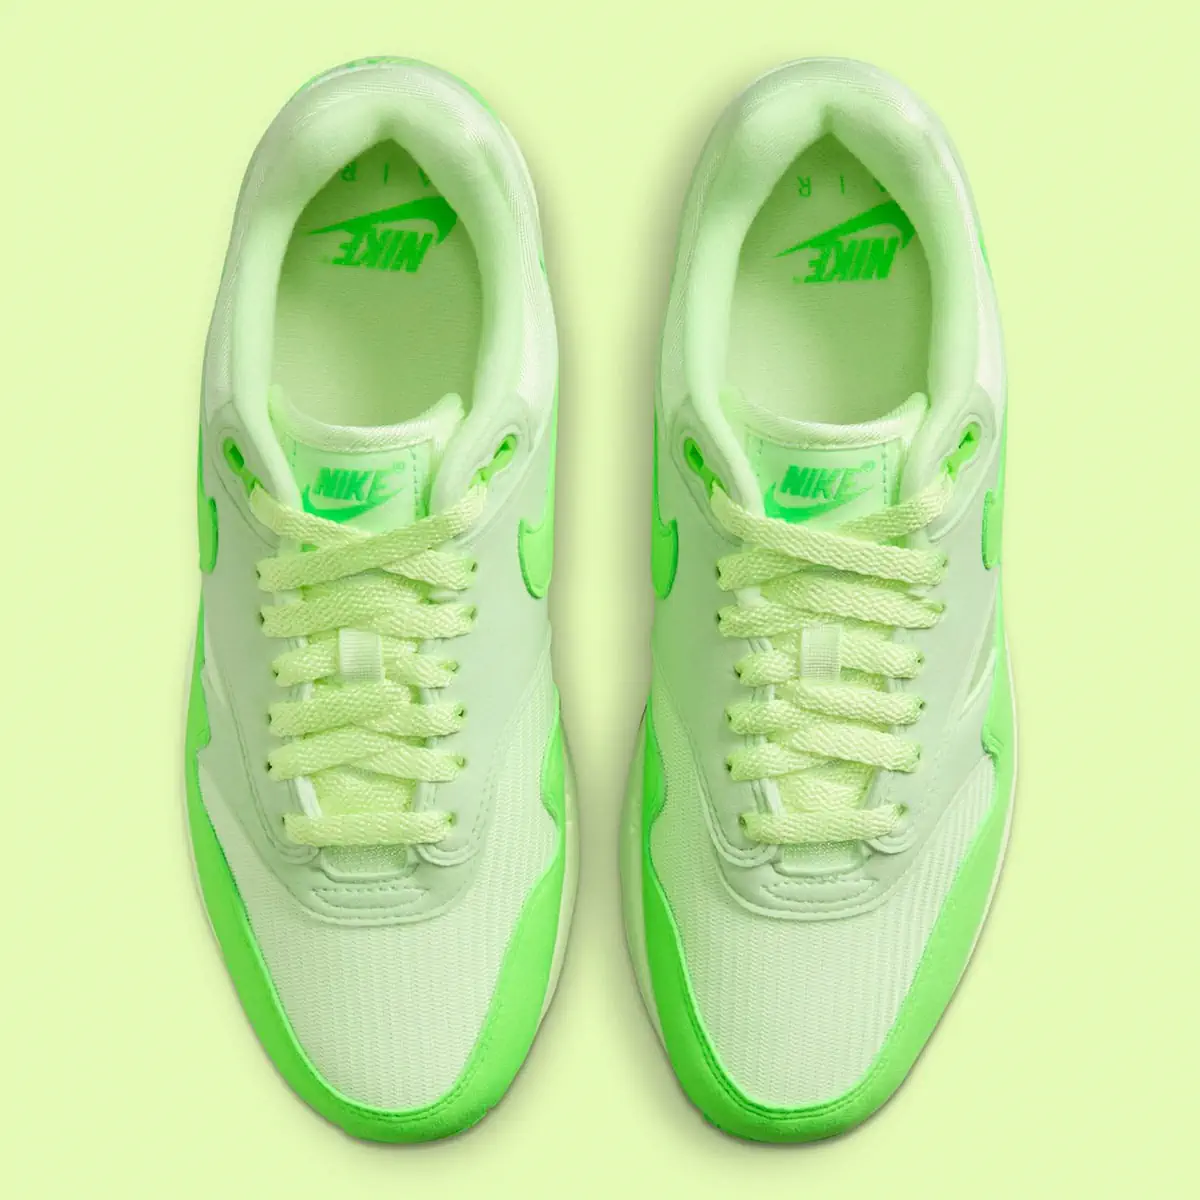 La Nike Air Max 1 “Vapor Green” se pare de néons pour l'automne